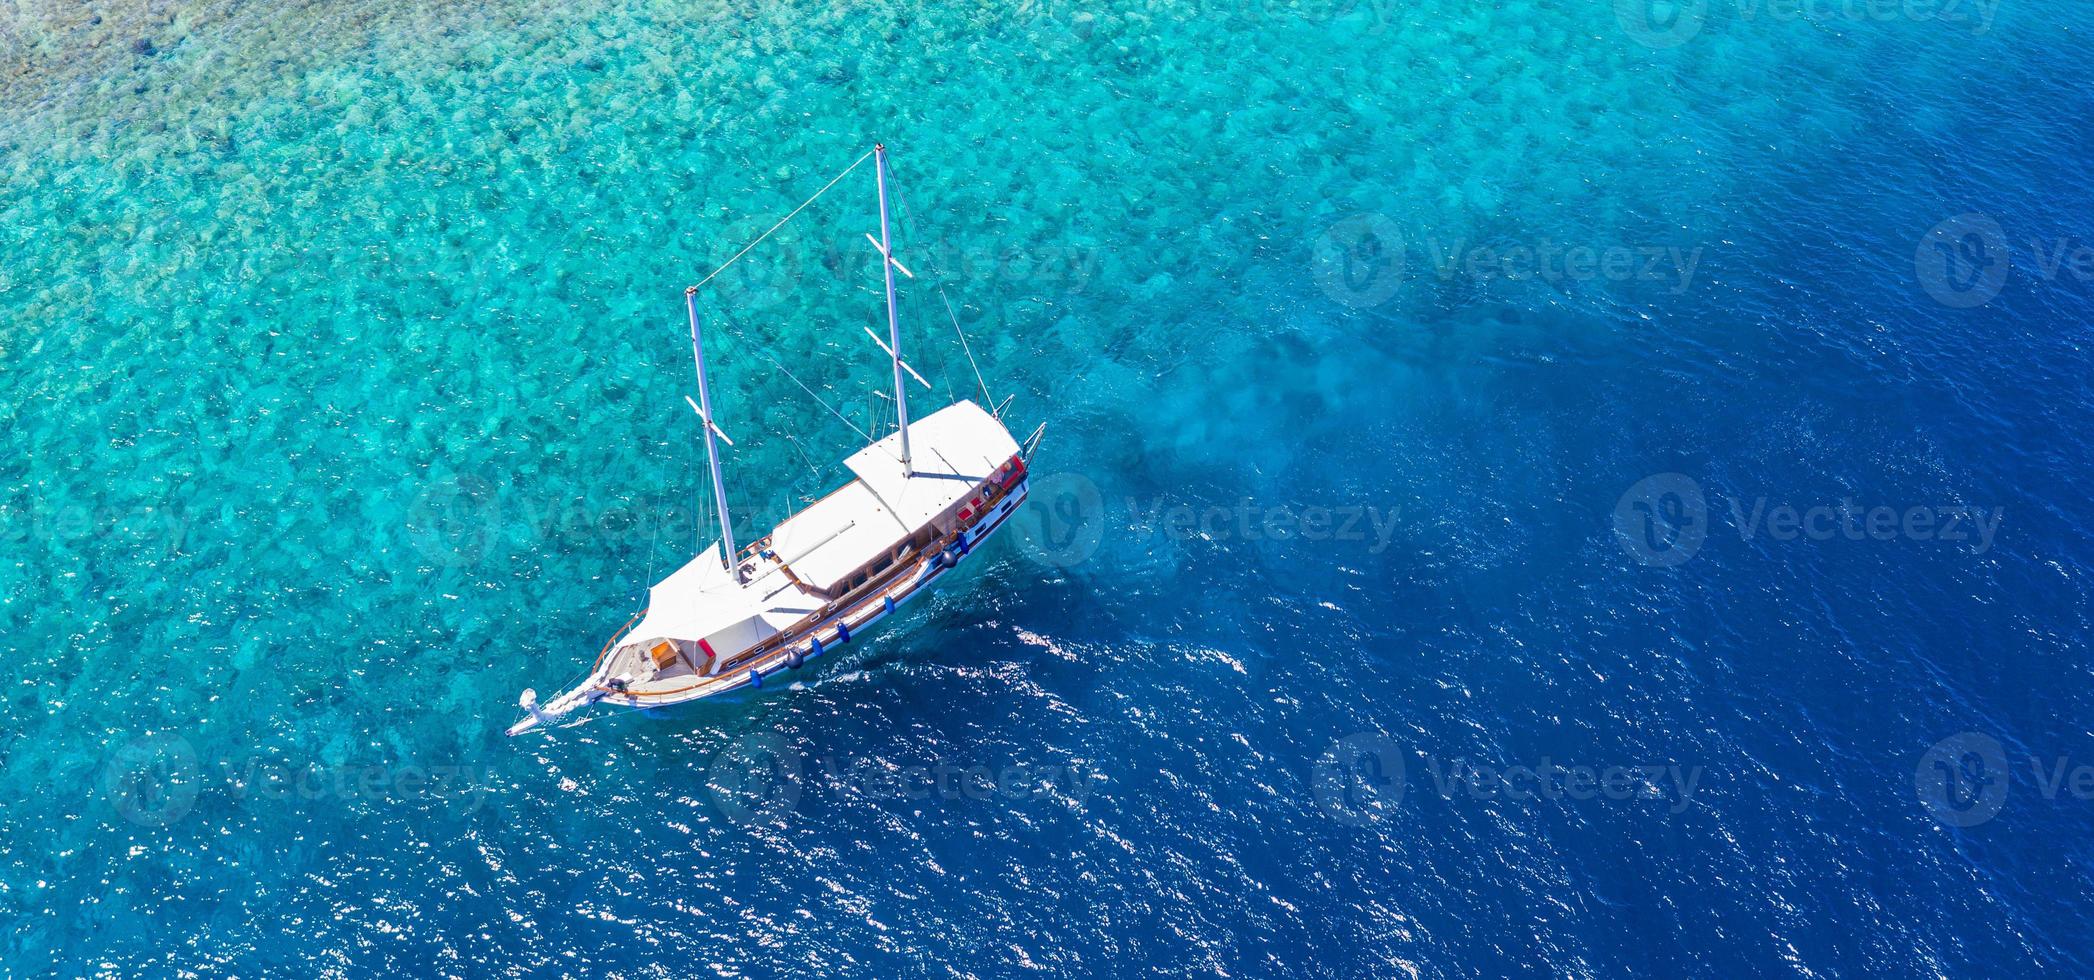 ancoraggio di yacht in acque turchesi cristalline di fronte all'isola tropicale, stile di vita ricreativo, snorkeling. vista aerea dello yacht all'ancora su acque turchesi, attività di lusso, tour delle Maldive foto